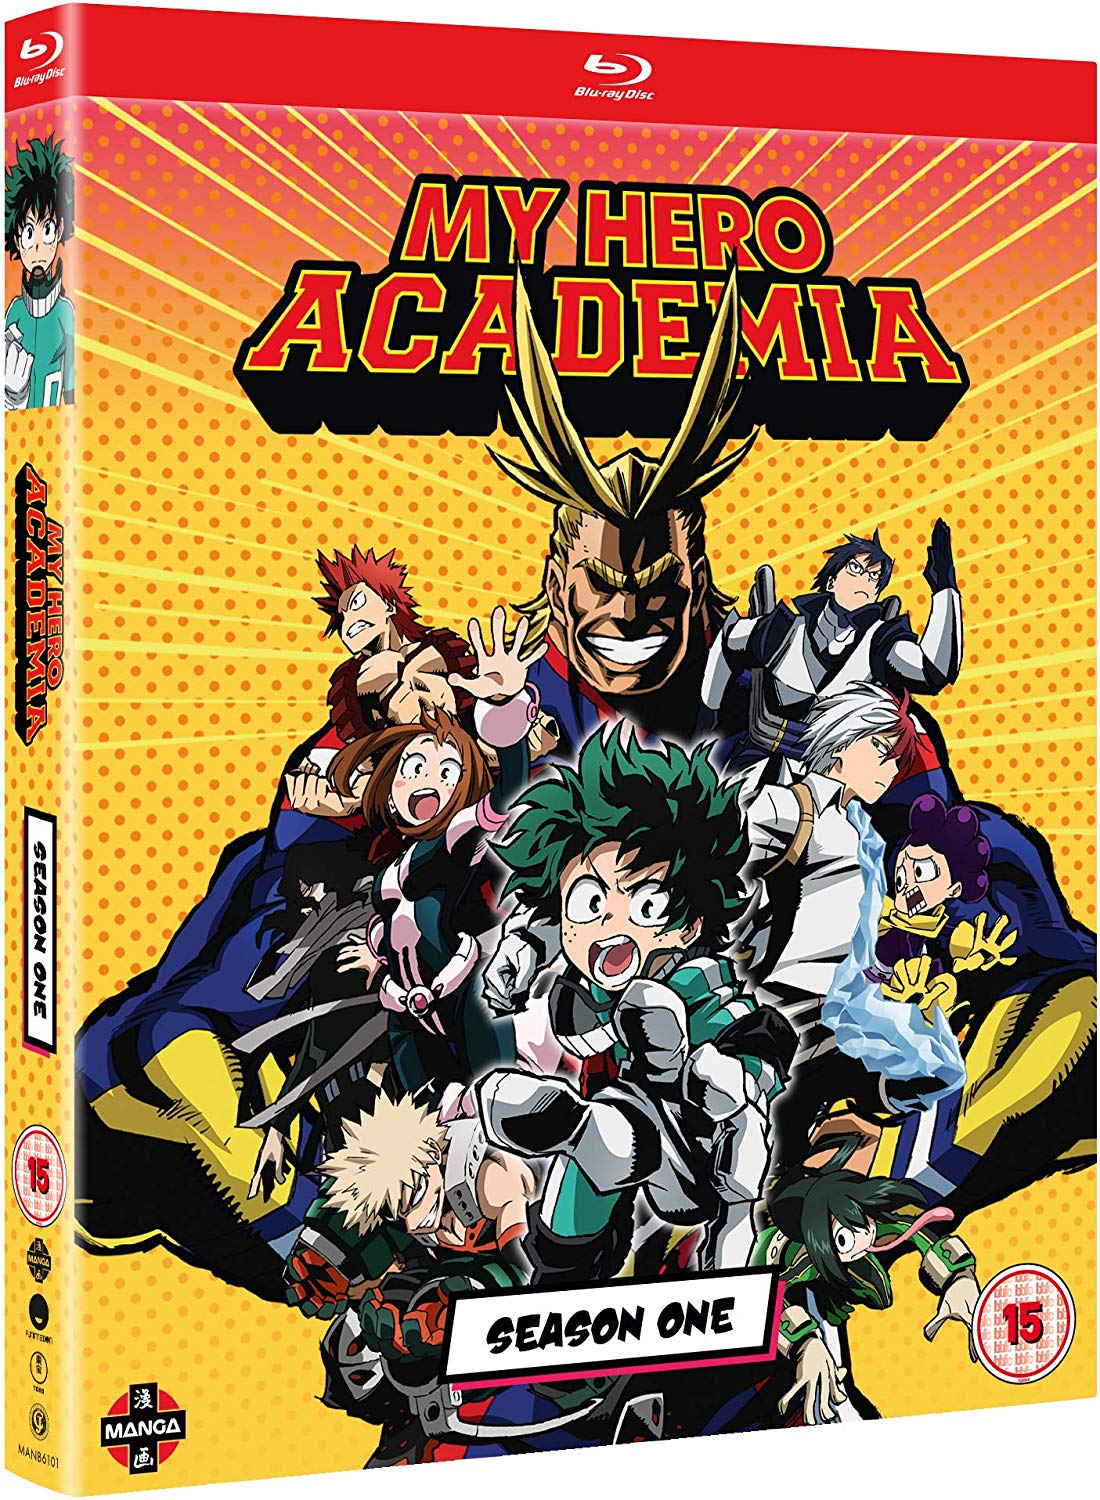 My Hero Academia Season 1 UK Blu-ray & DVD Re-Release Listed on Amazon – Anime UK News